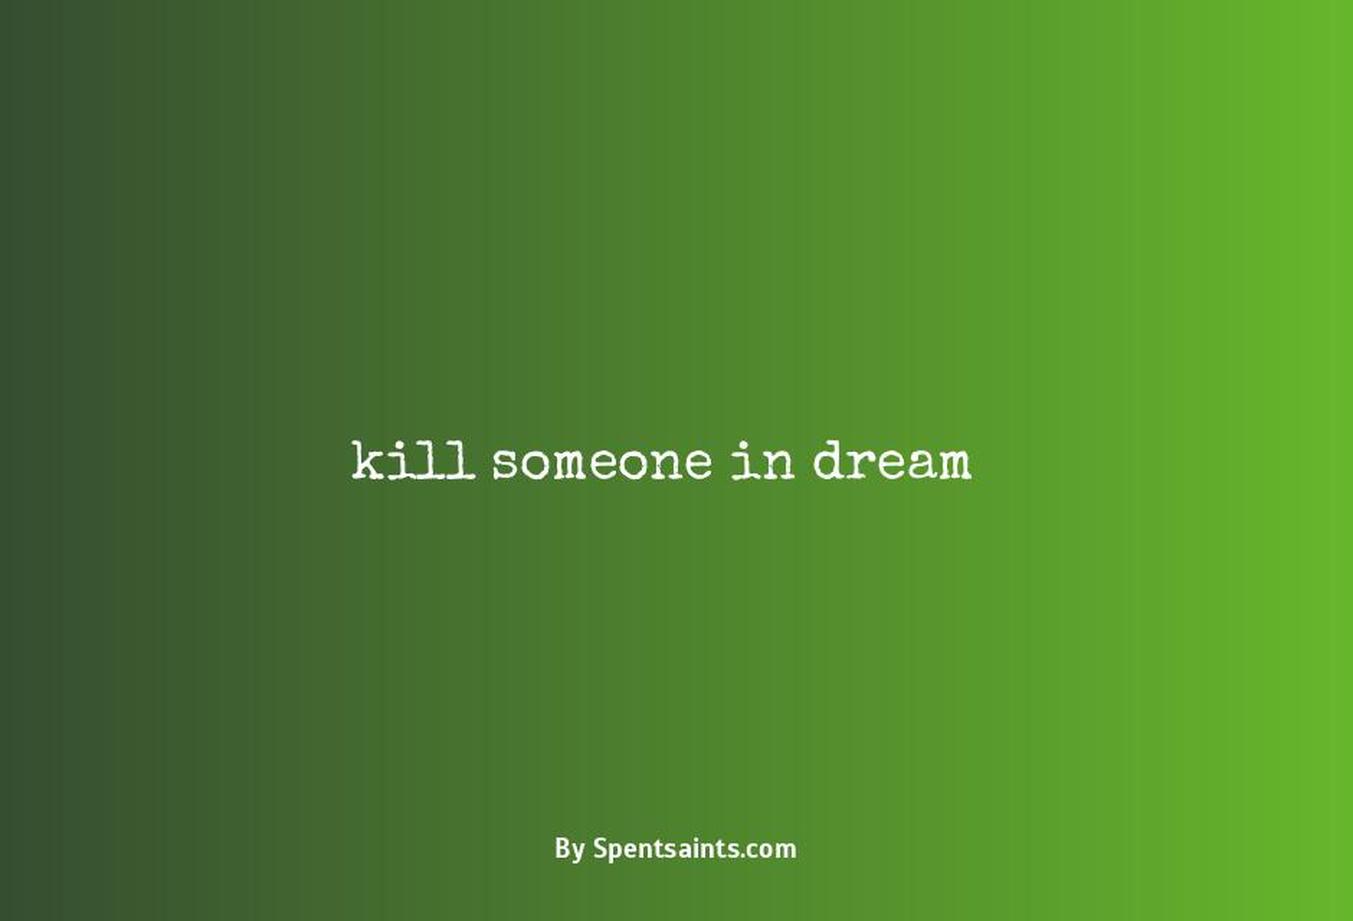 kill someone in dream